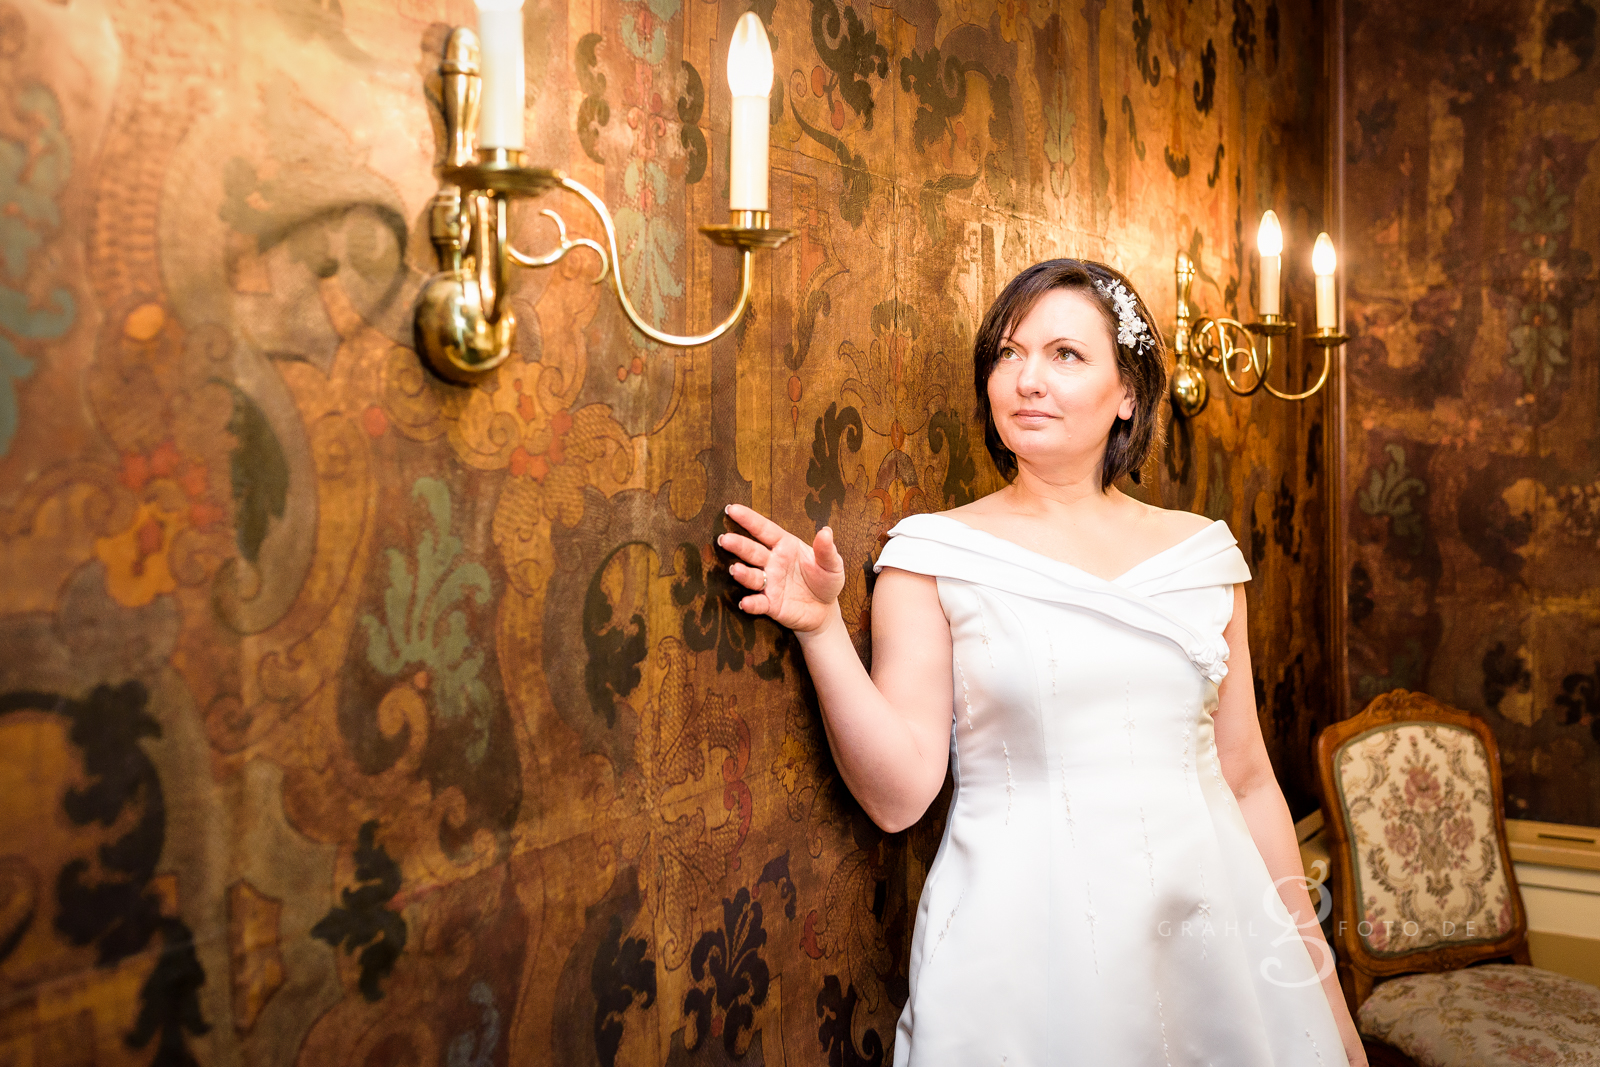 Grahlfoto Hochzeitsfotografie Hochzeitsreportage Moritzburg Leuchtturm Fasanenschlösschen mit Cordula Maria Grahl